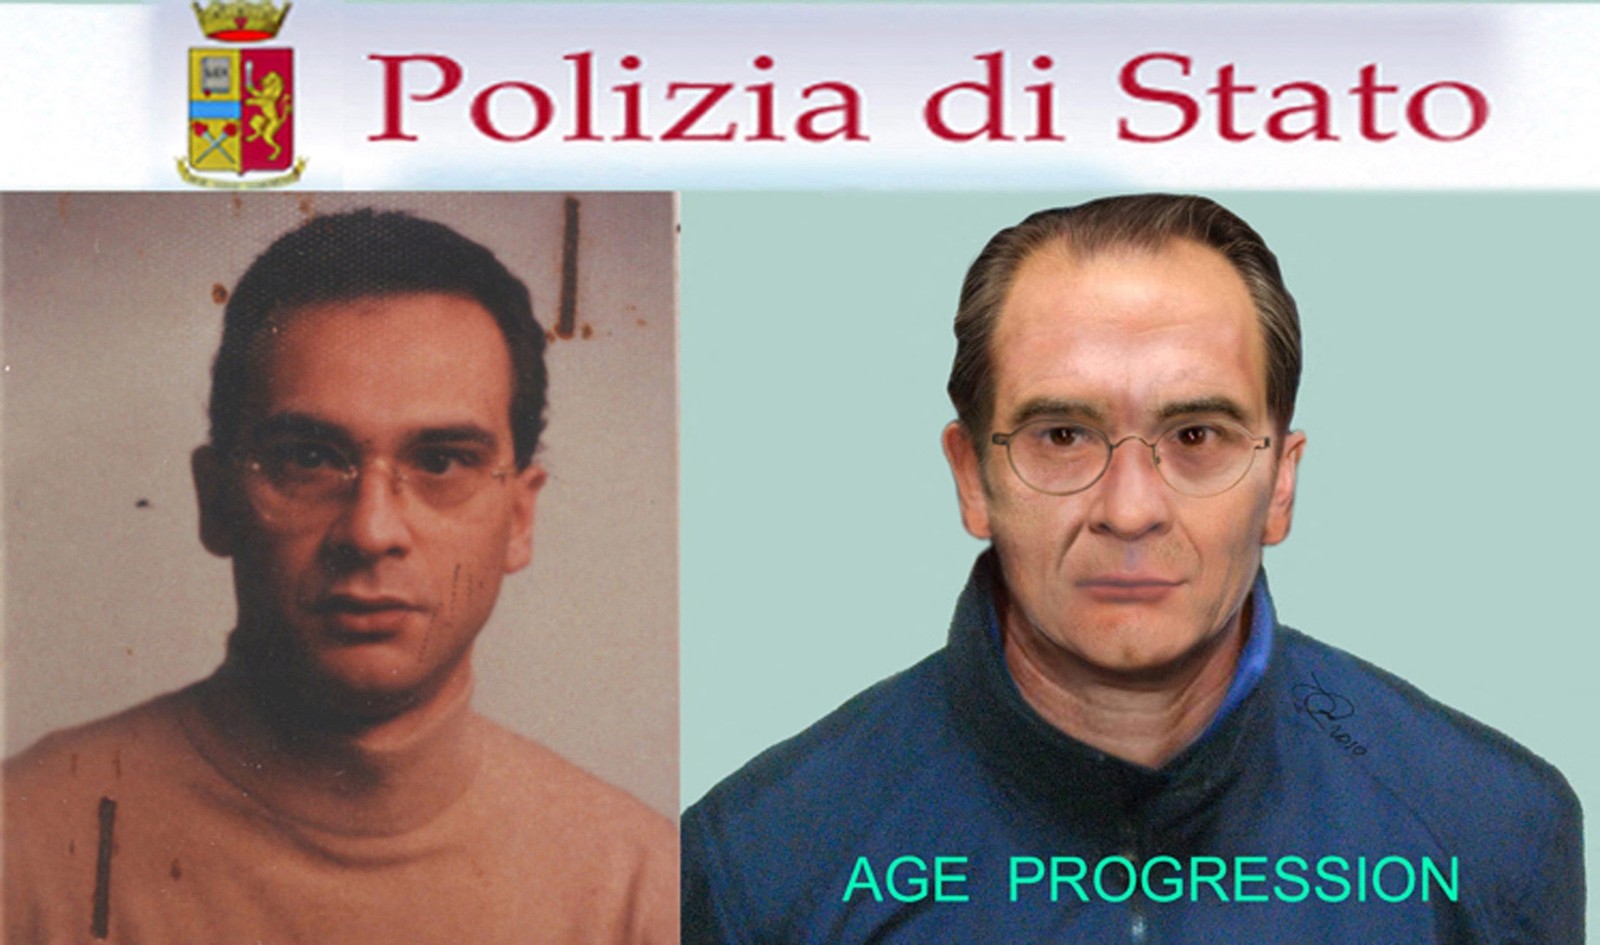 Reconstrução feita pela polícia italiana do rosto do mafioso mais procurado do país, Matteo Messina Denaro, preso em 16 de janeiro de 2023 após 30 anos fugitivo — Foto: Carabinieri via AFP